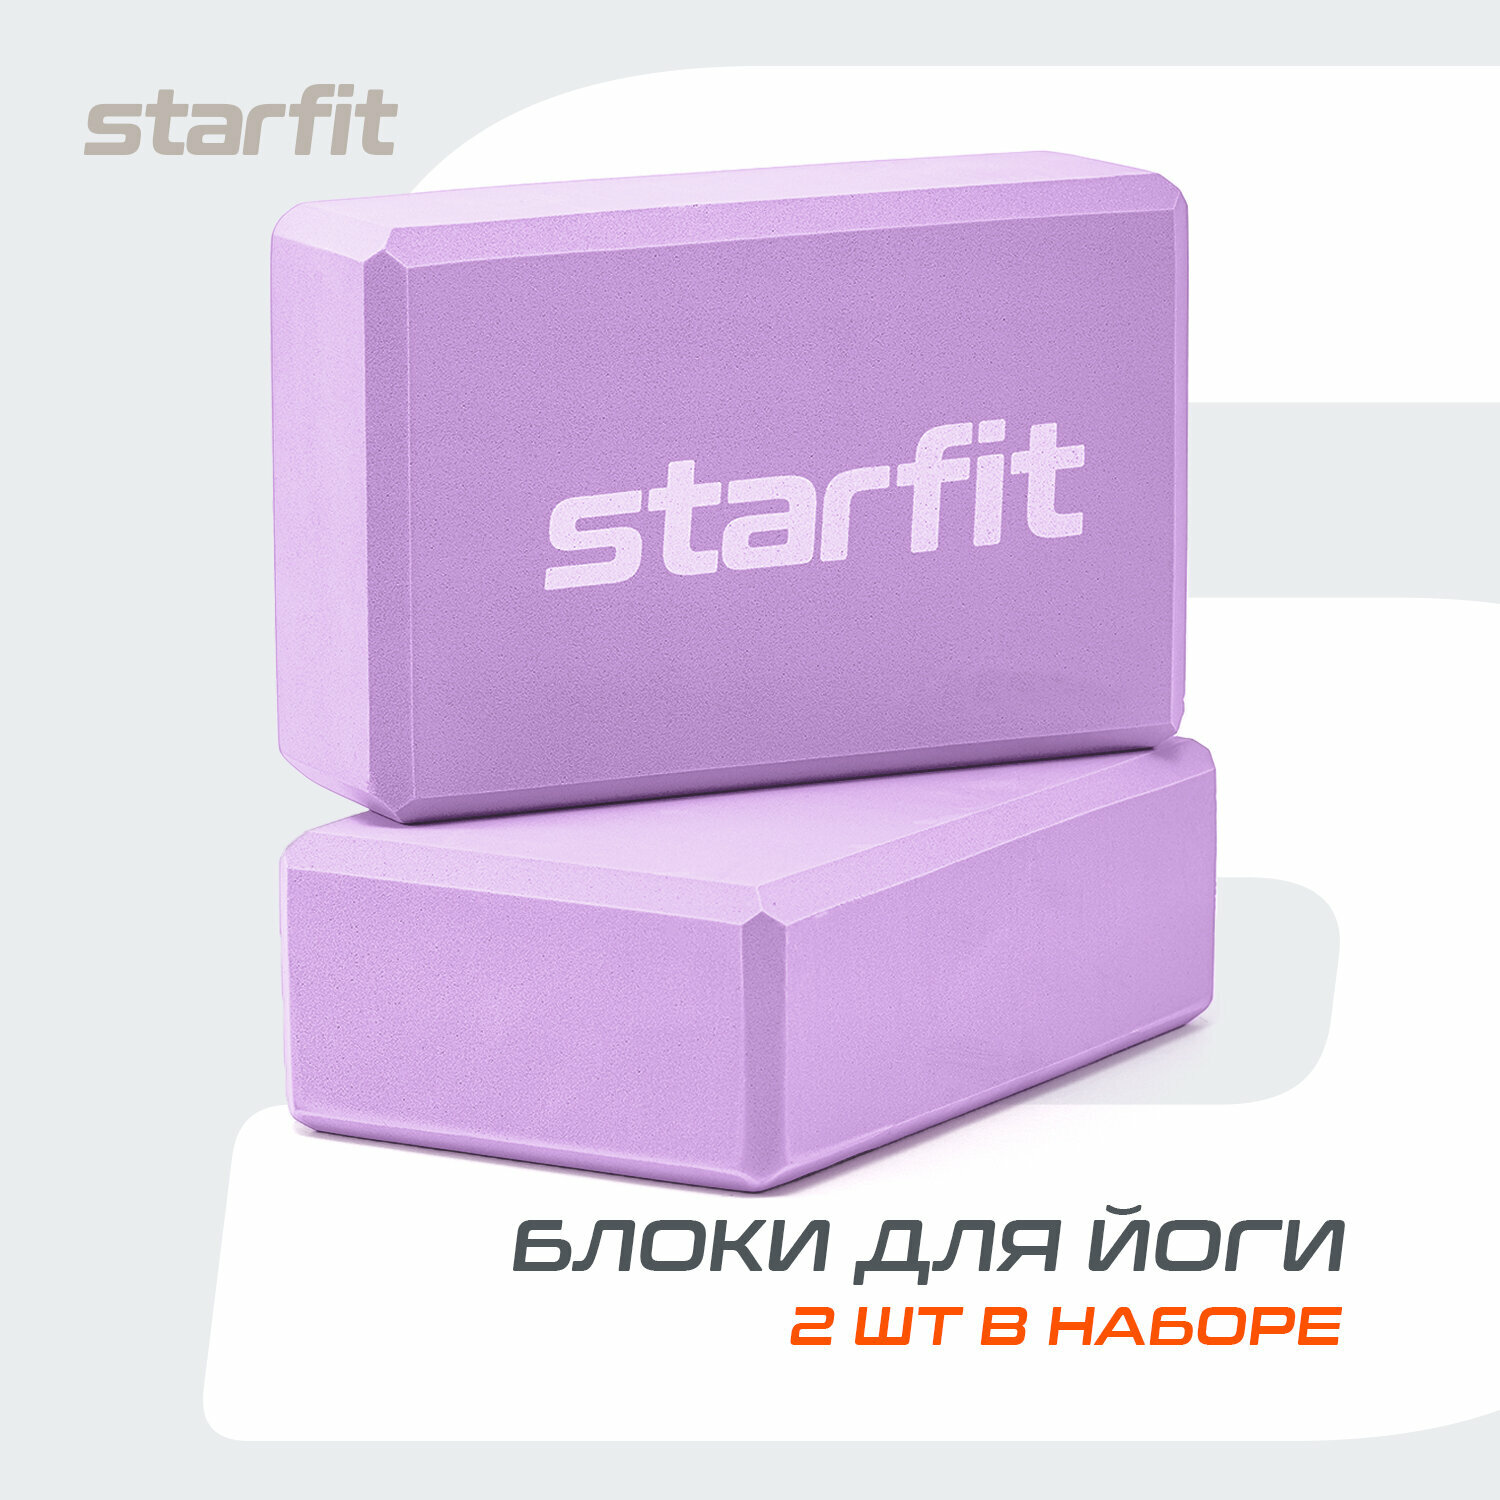 Блок для йоги STARFIT YB-200 EVA, 8 см, 115 гр, 22,5х15 см, фиолетовый пастель, 2 шт